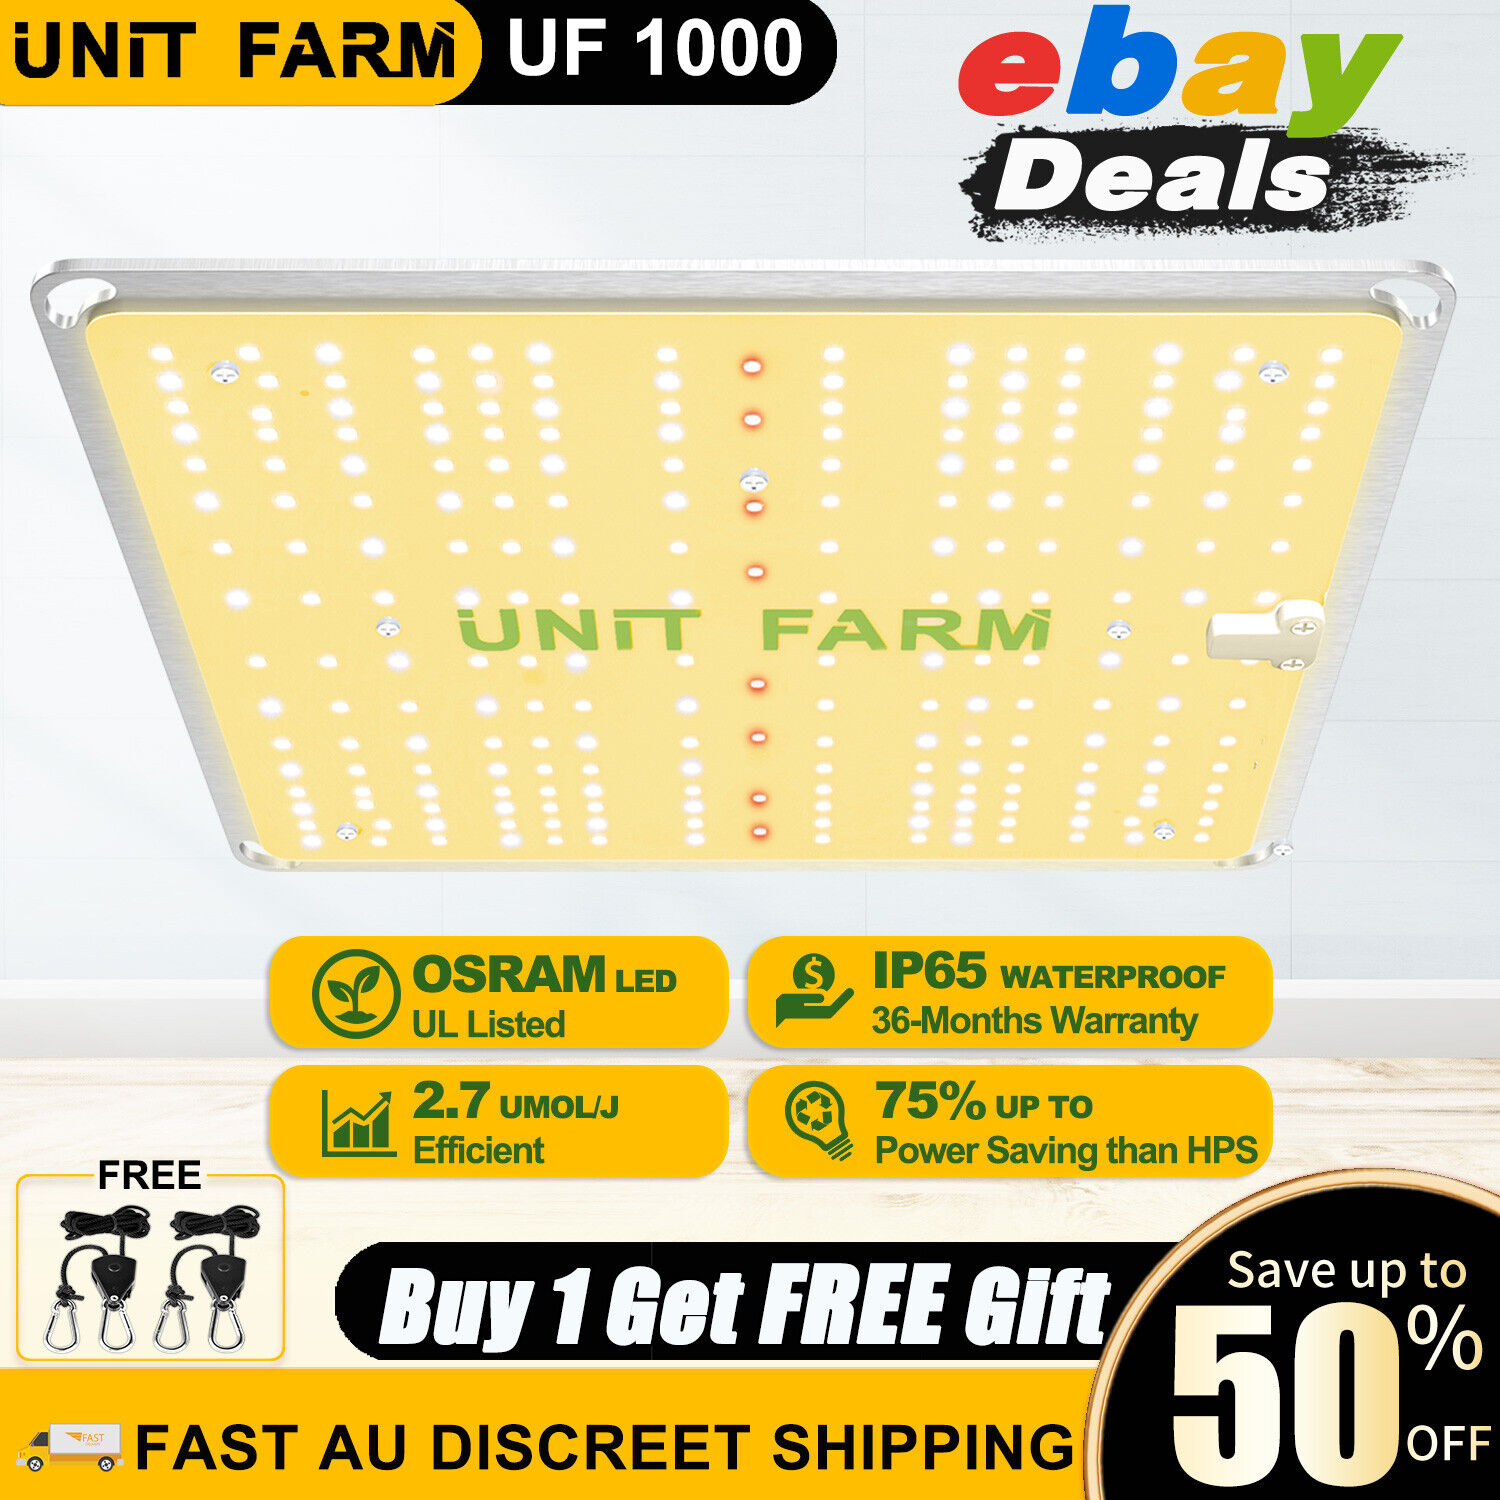 Unit Farm UF 1000 LED Grow Light Full Spectrum for Plants Veg Flower Hydroponic